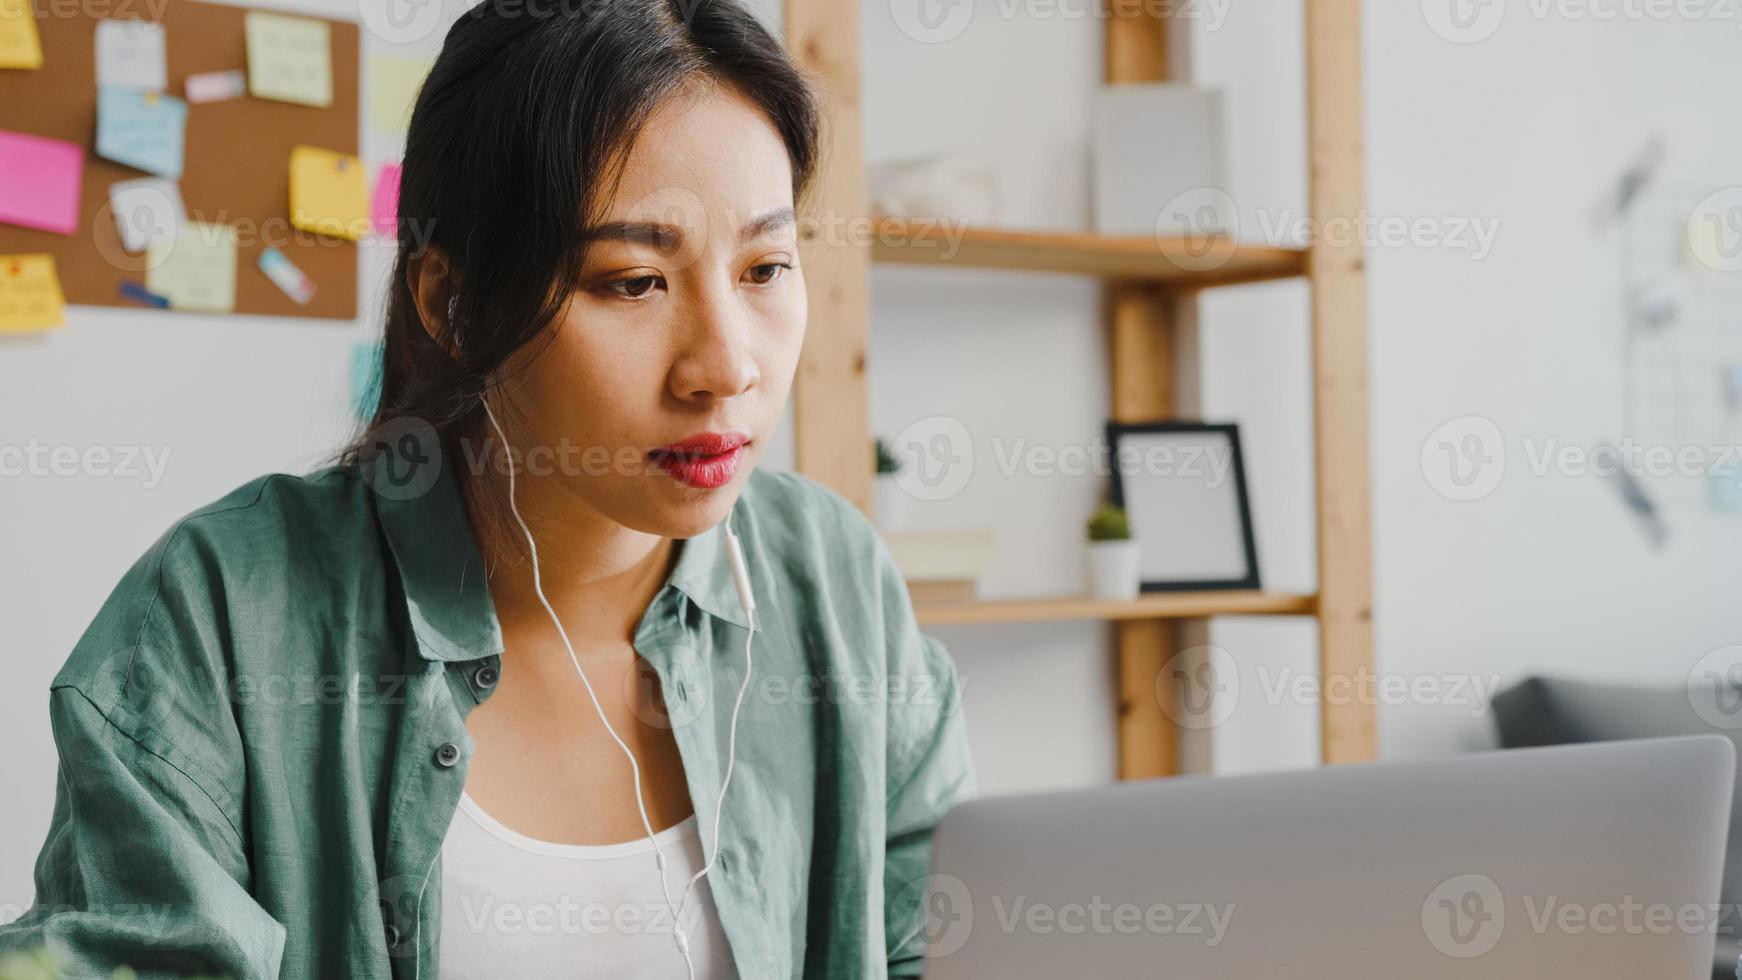 asiatisk affärskvinna som använder bärbar dator prata med kollegor om planering i videosamtal medan smart arbetar hemifrån i vardagsrummet. självisolering, social distansering, karantän för förebyggande av corona-virus. foto